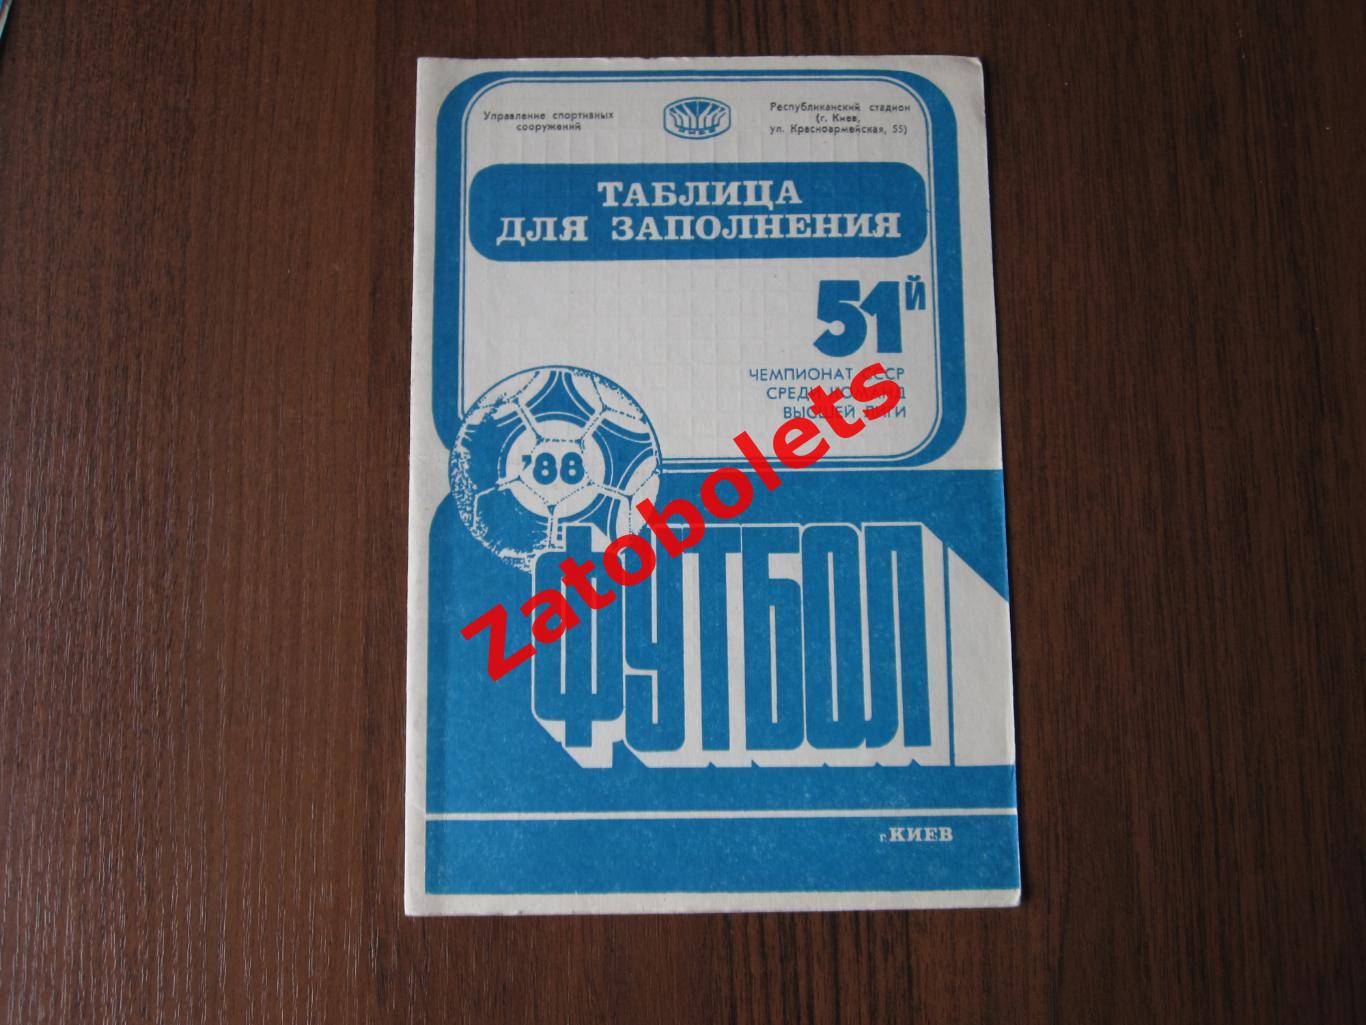 Таблица для заполнения чемпионат СССР 1988 Календарь Динамо Киев